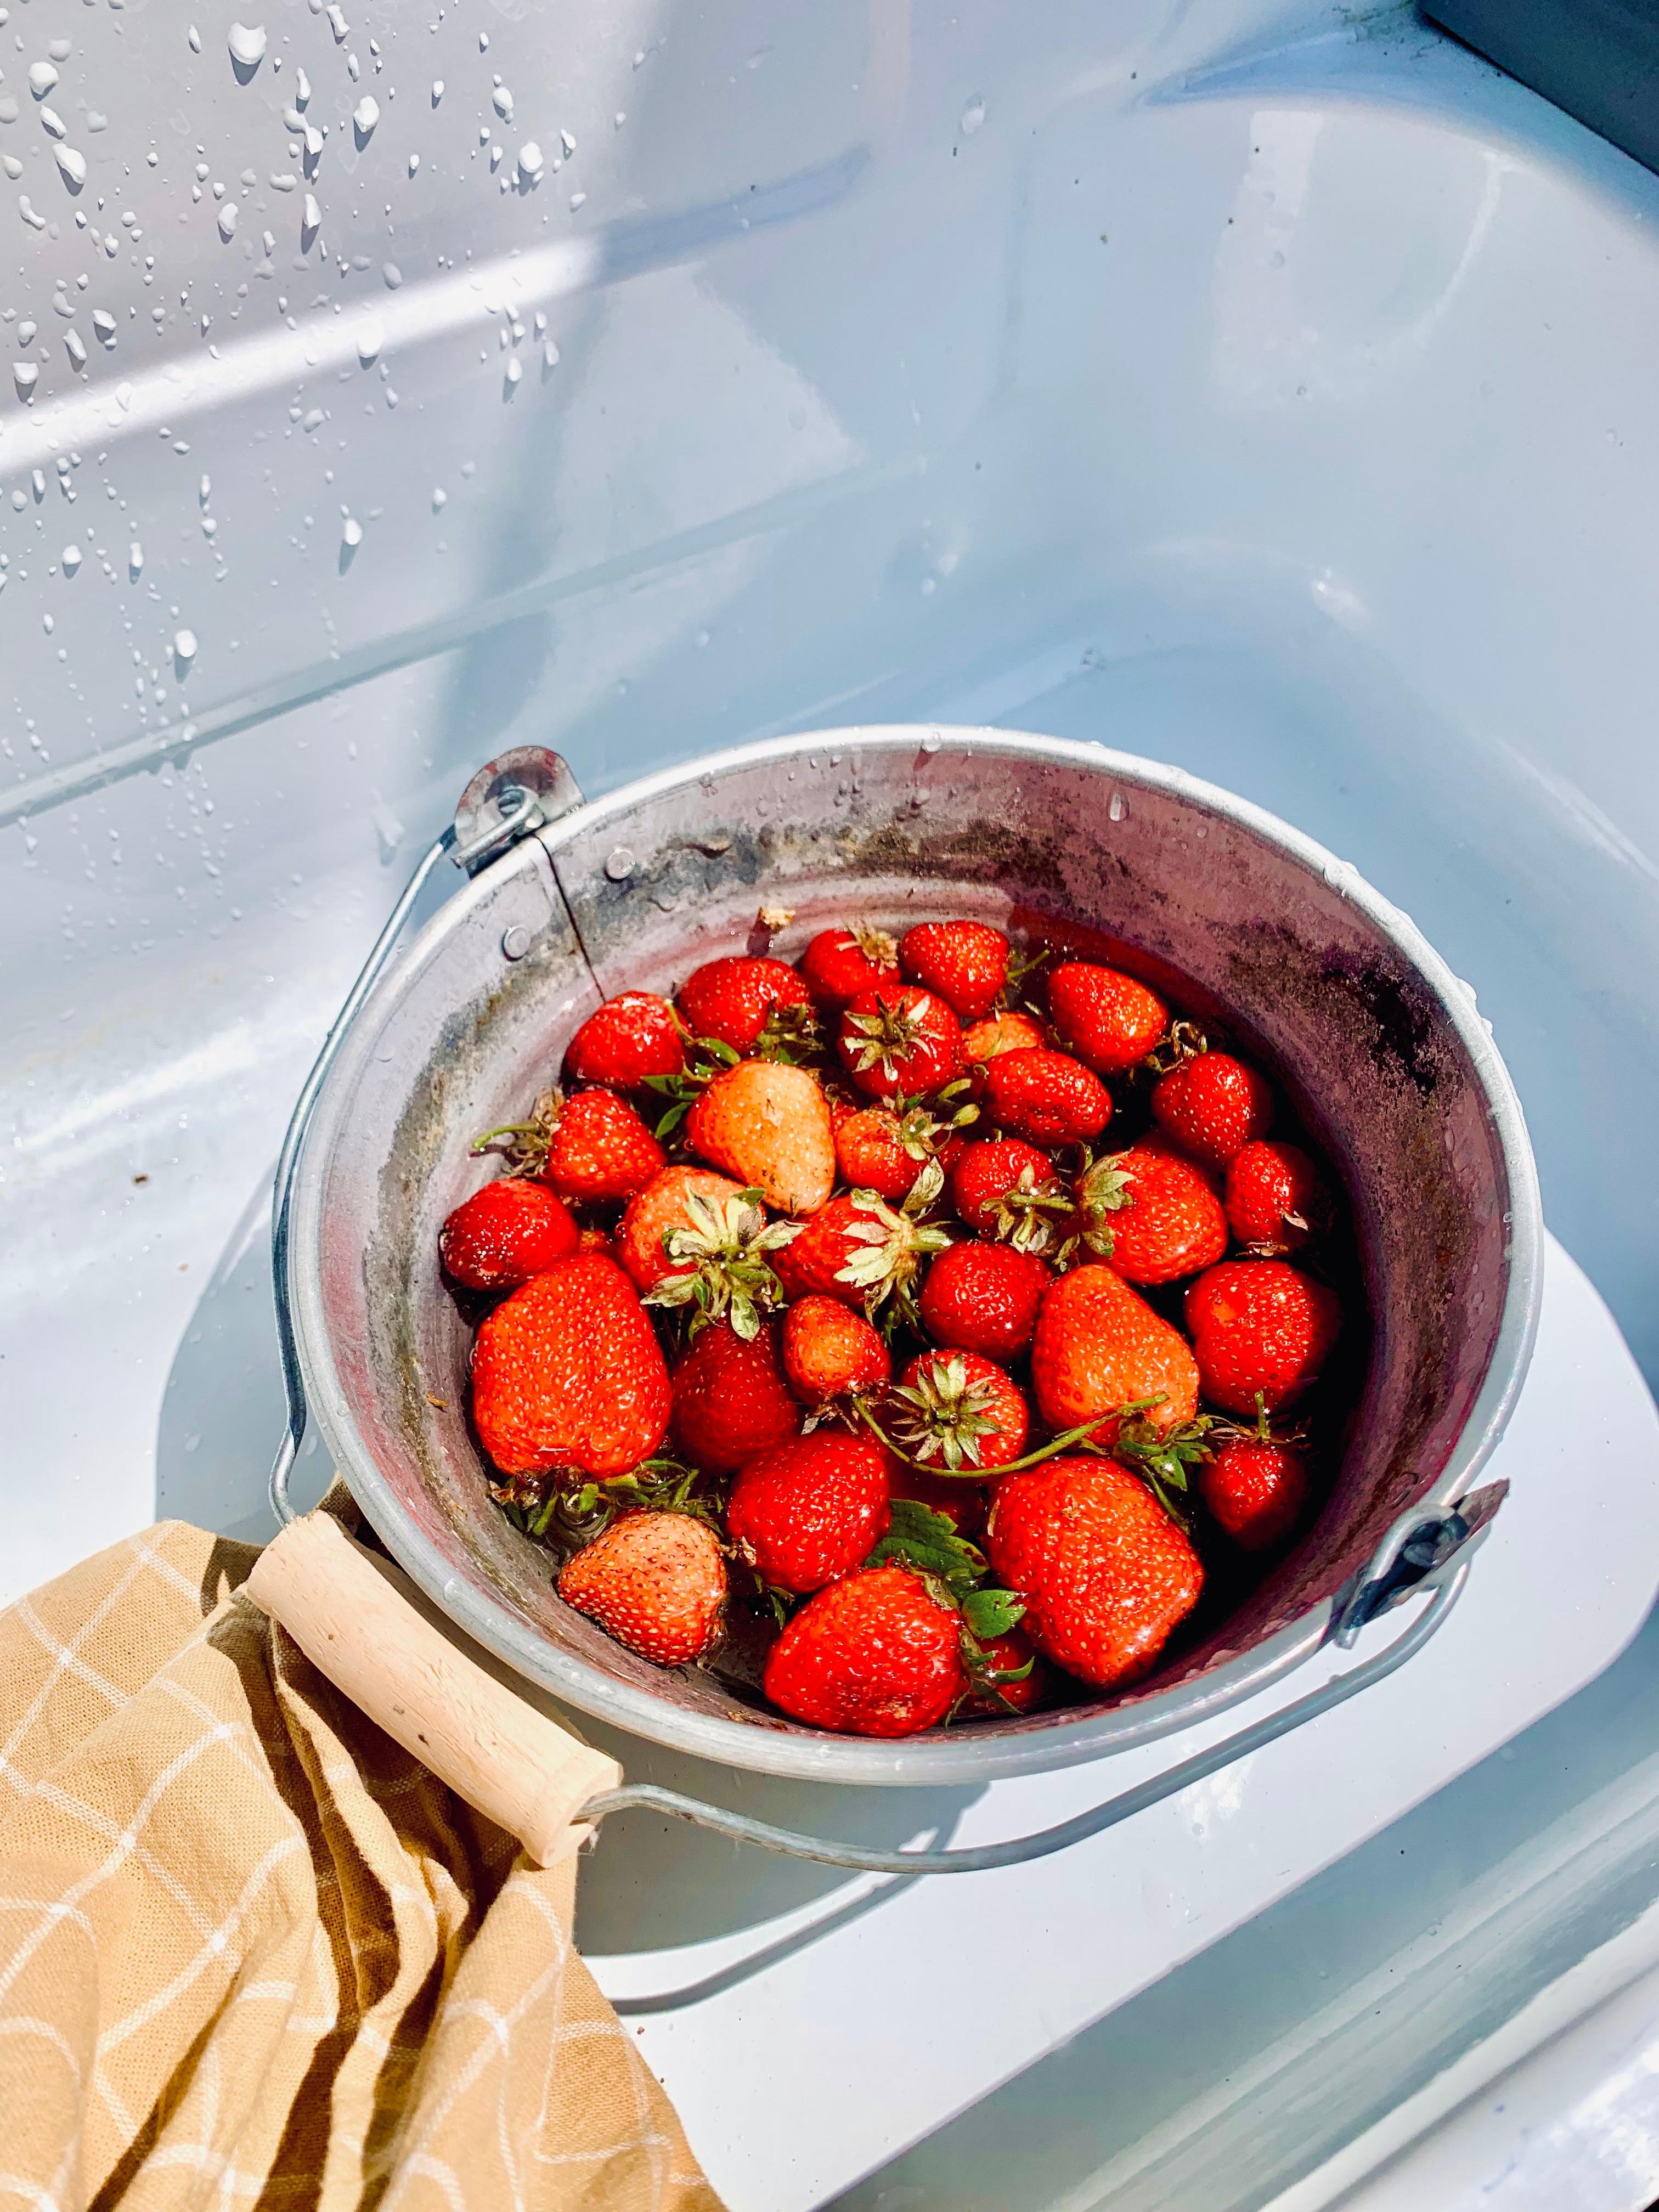 Die Erdbeer Saison im Garten
🍓🍓
#erdbeere #garten #selbstversorger #outdoor #fresh #food #frucht #eimer 